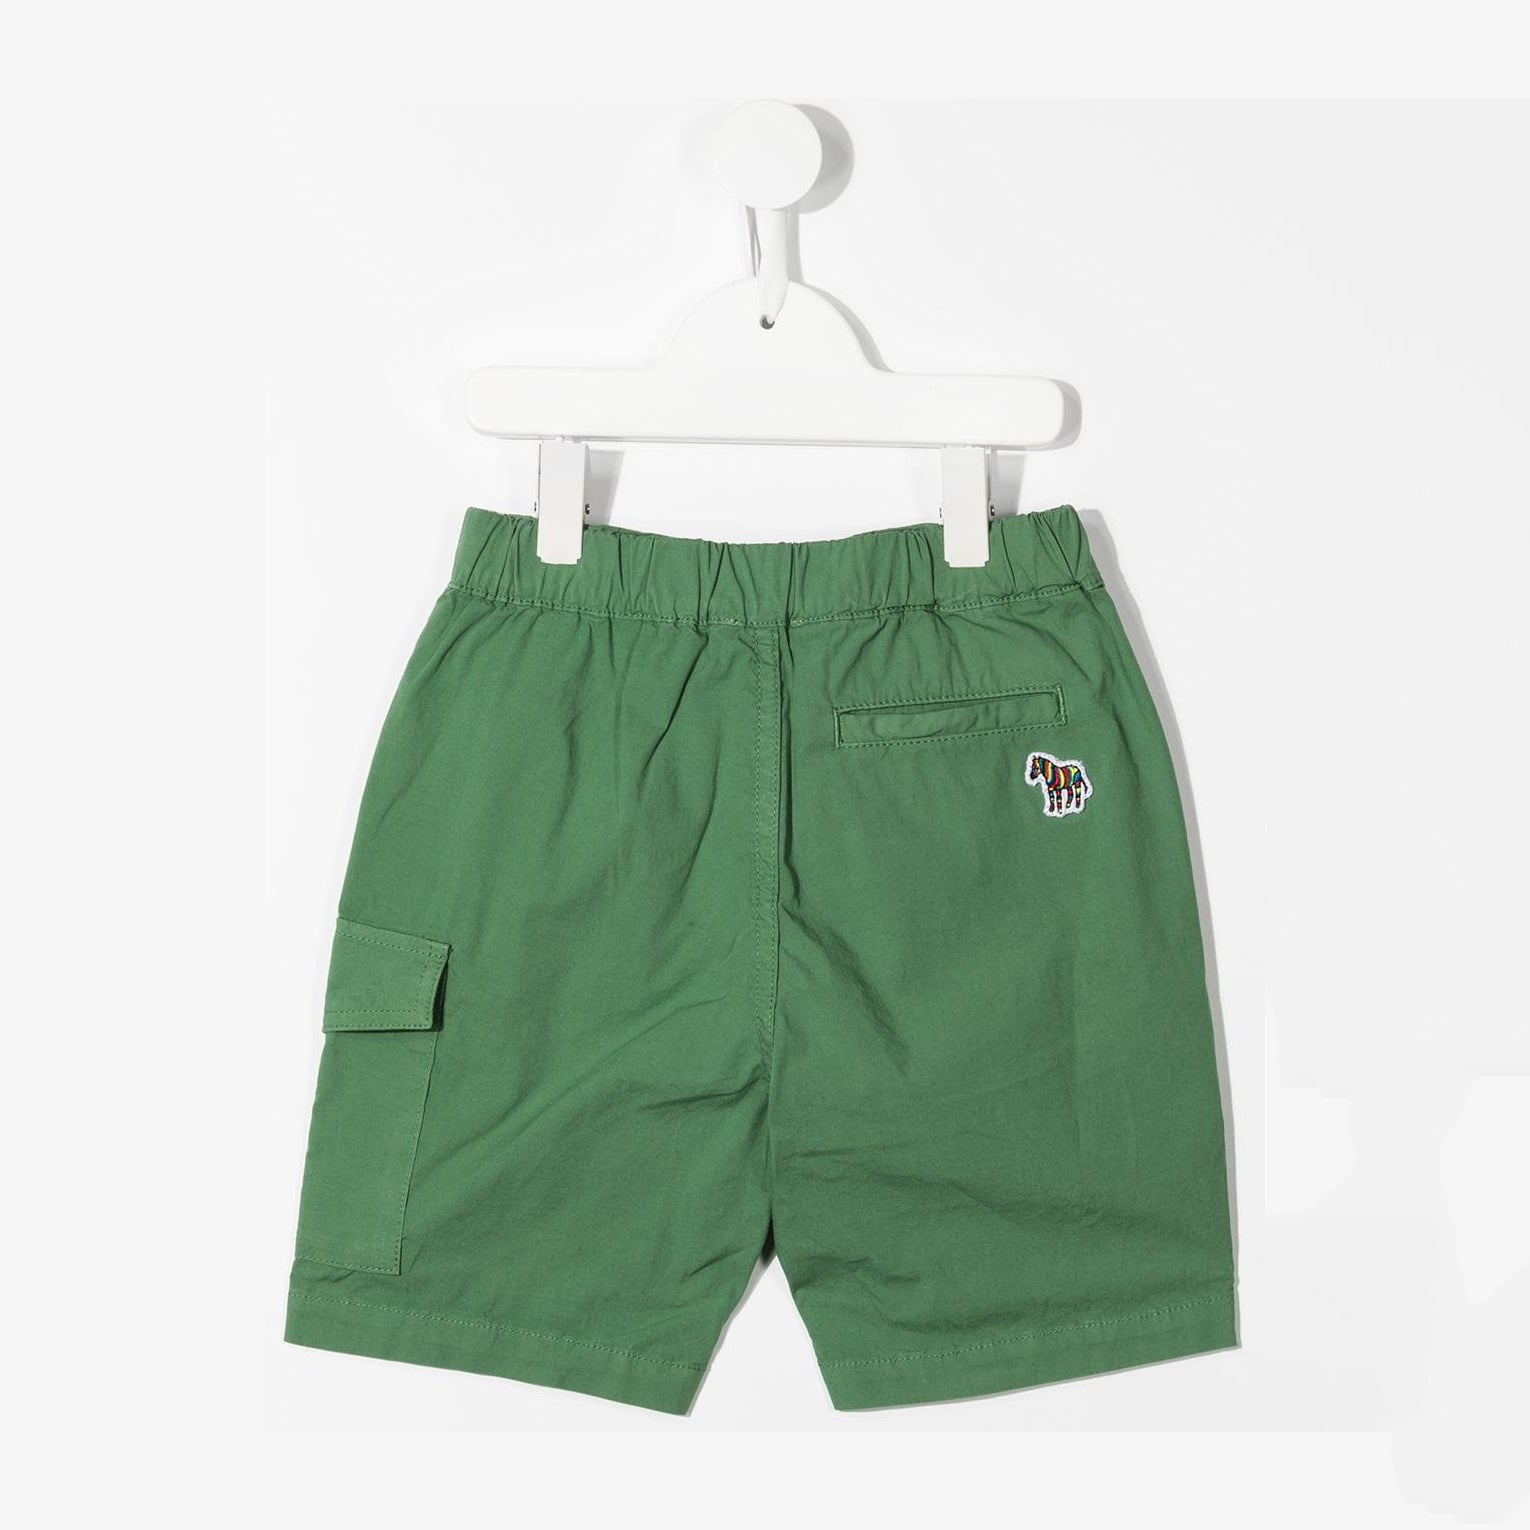 Boys Green Cotton Shorts